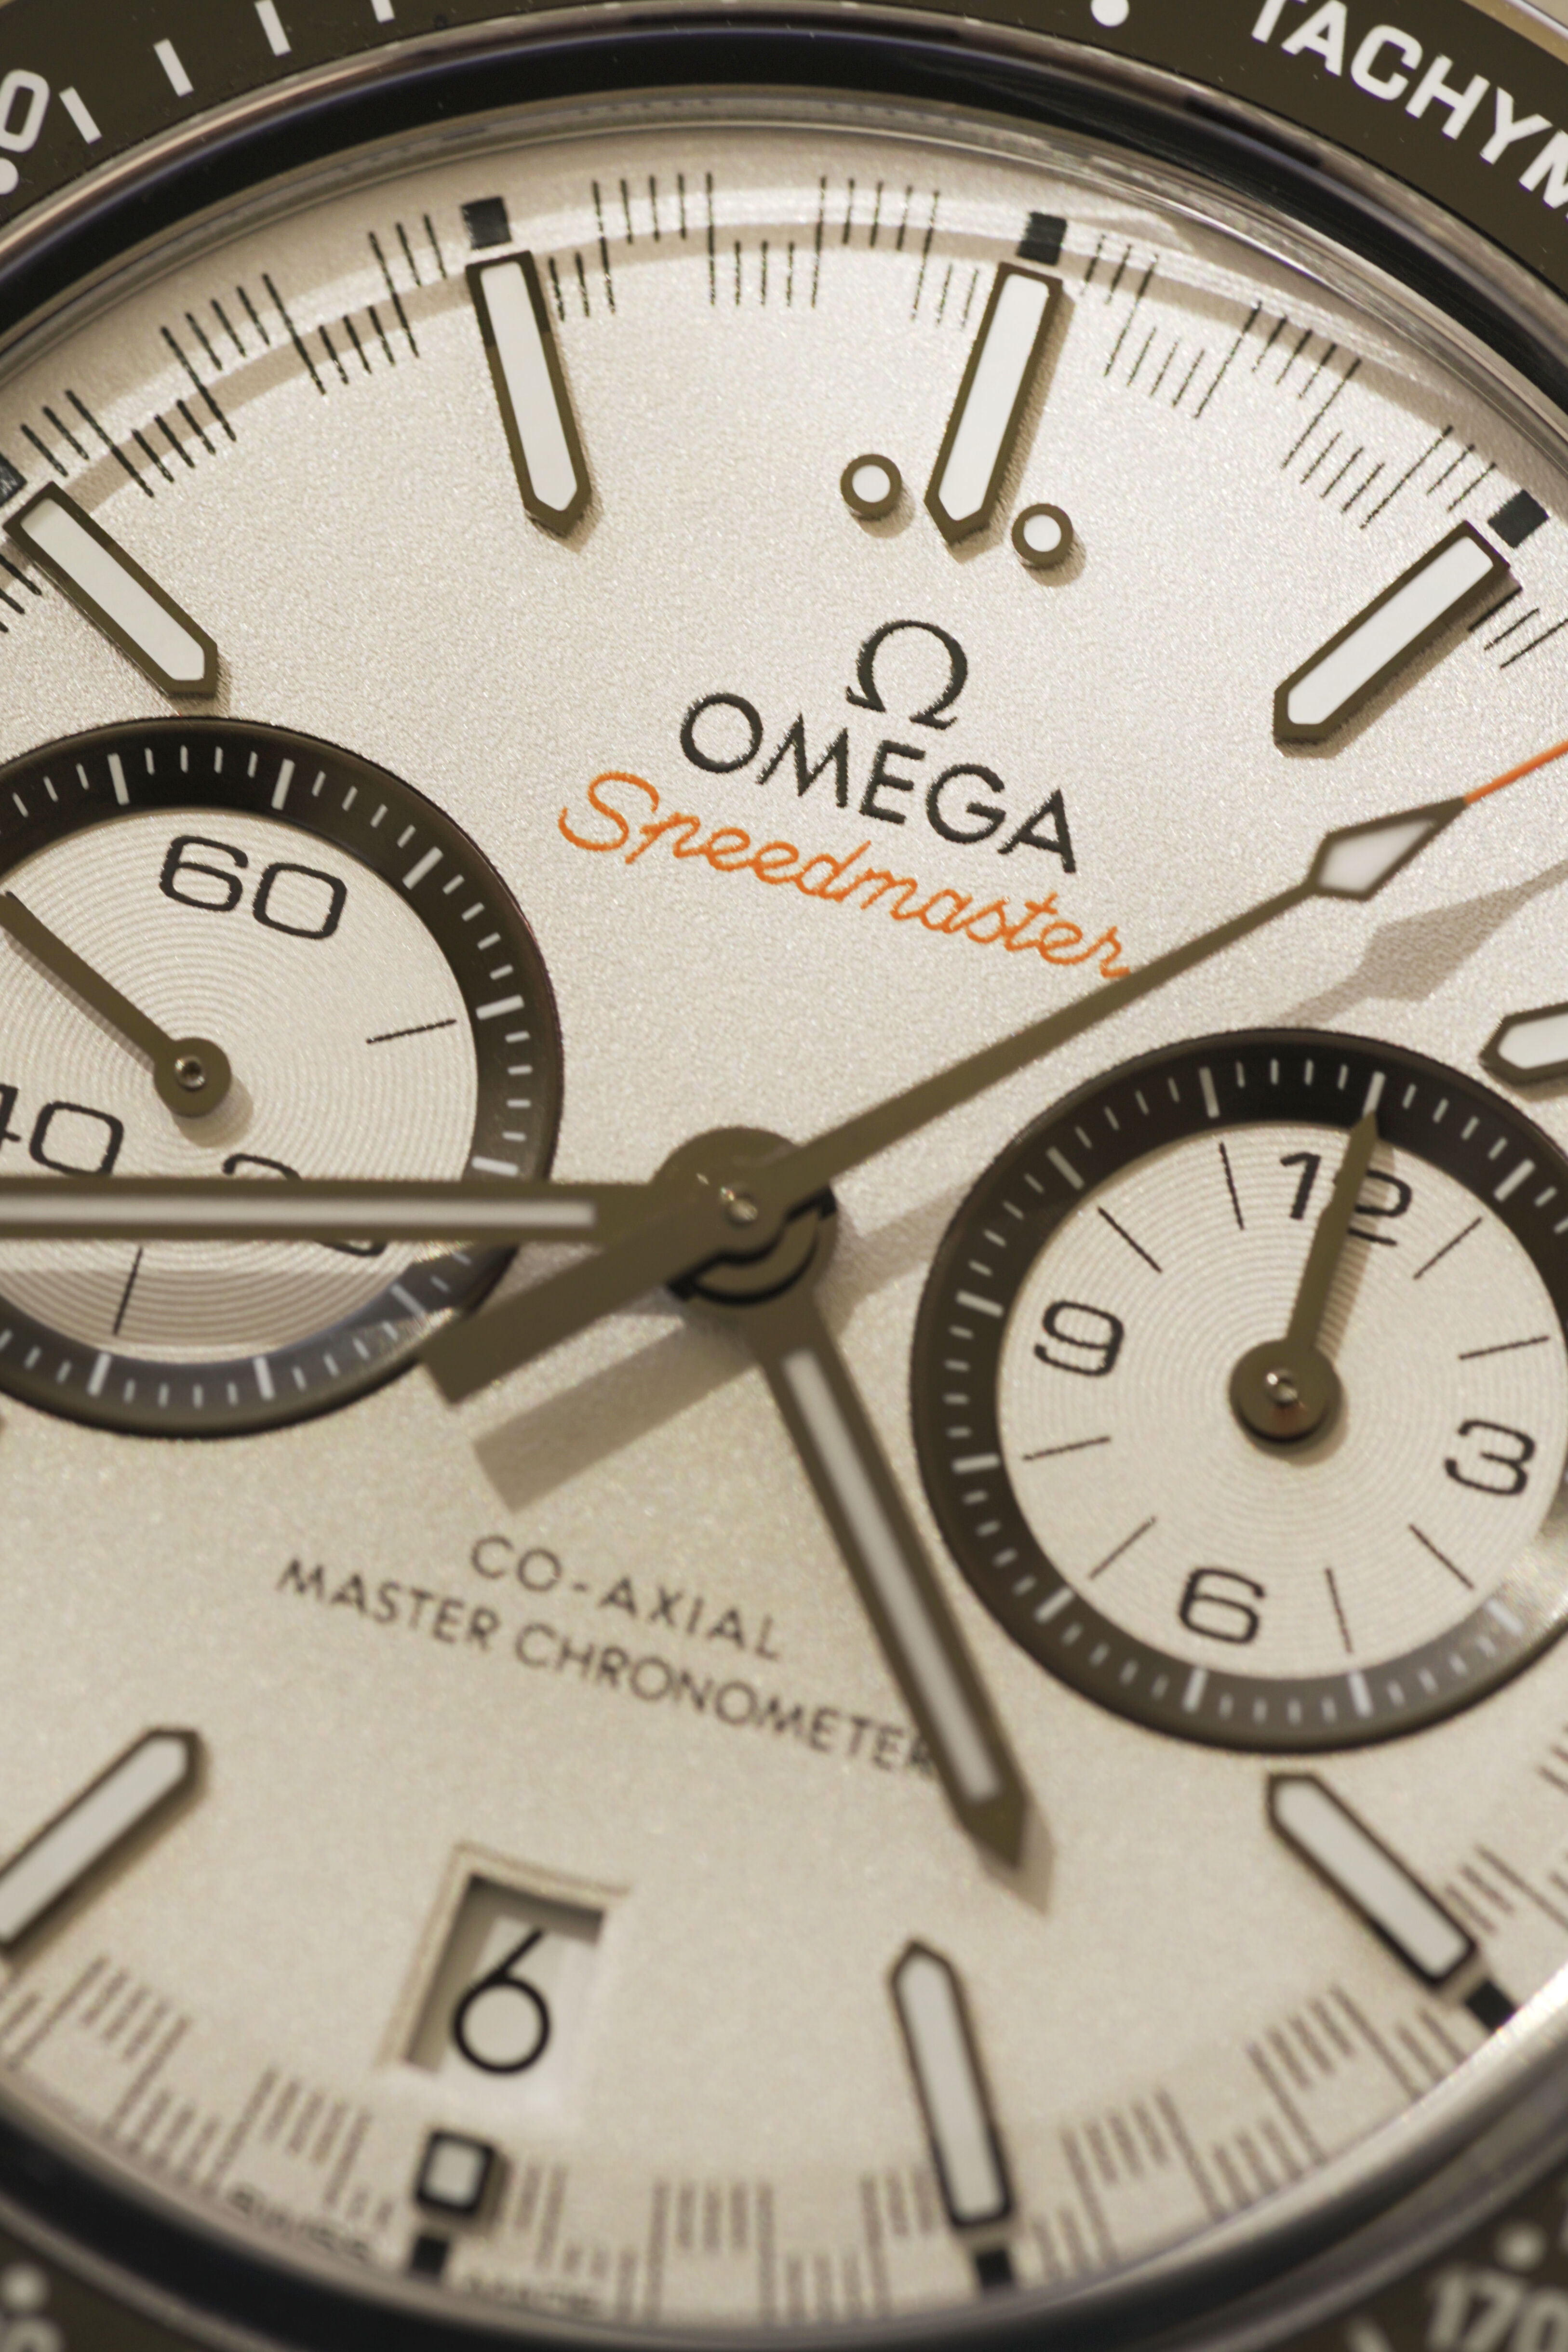 Omega - Speedmaster Racing - 329.30.44.51.04.001 - 006